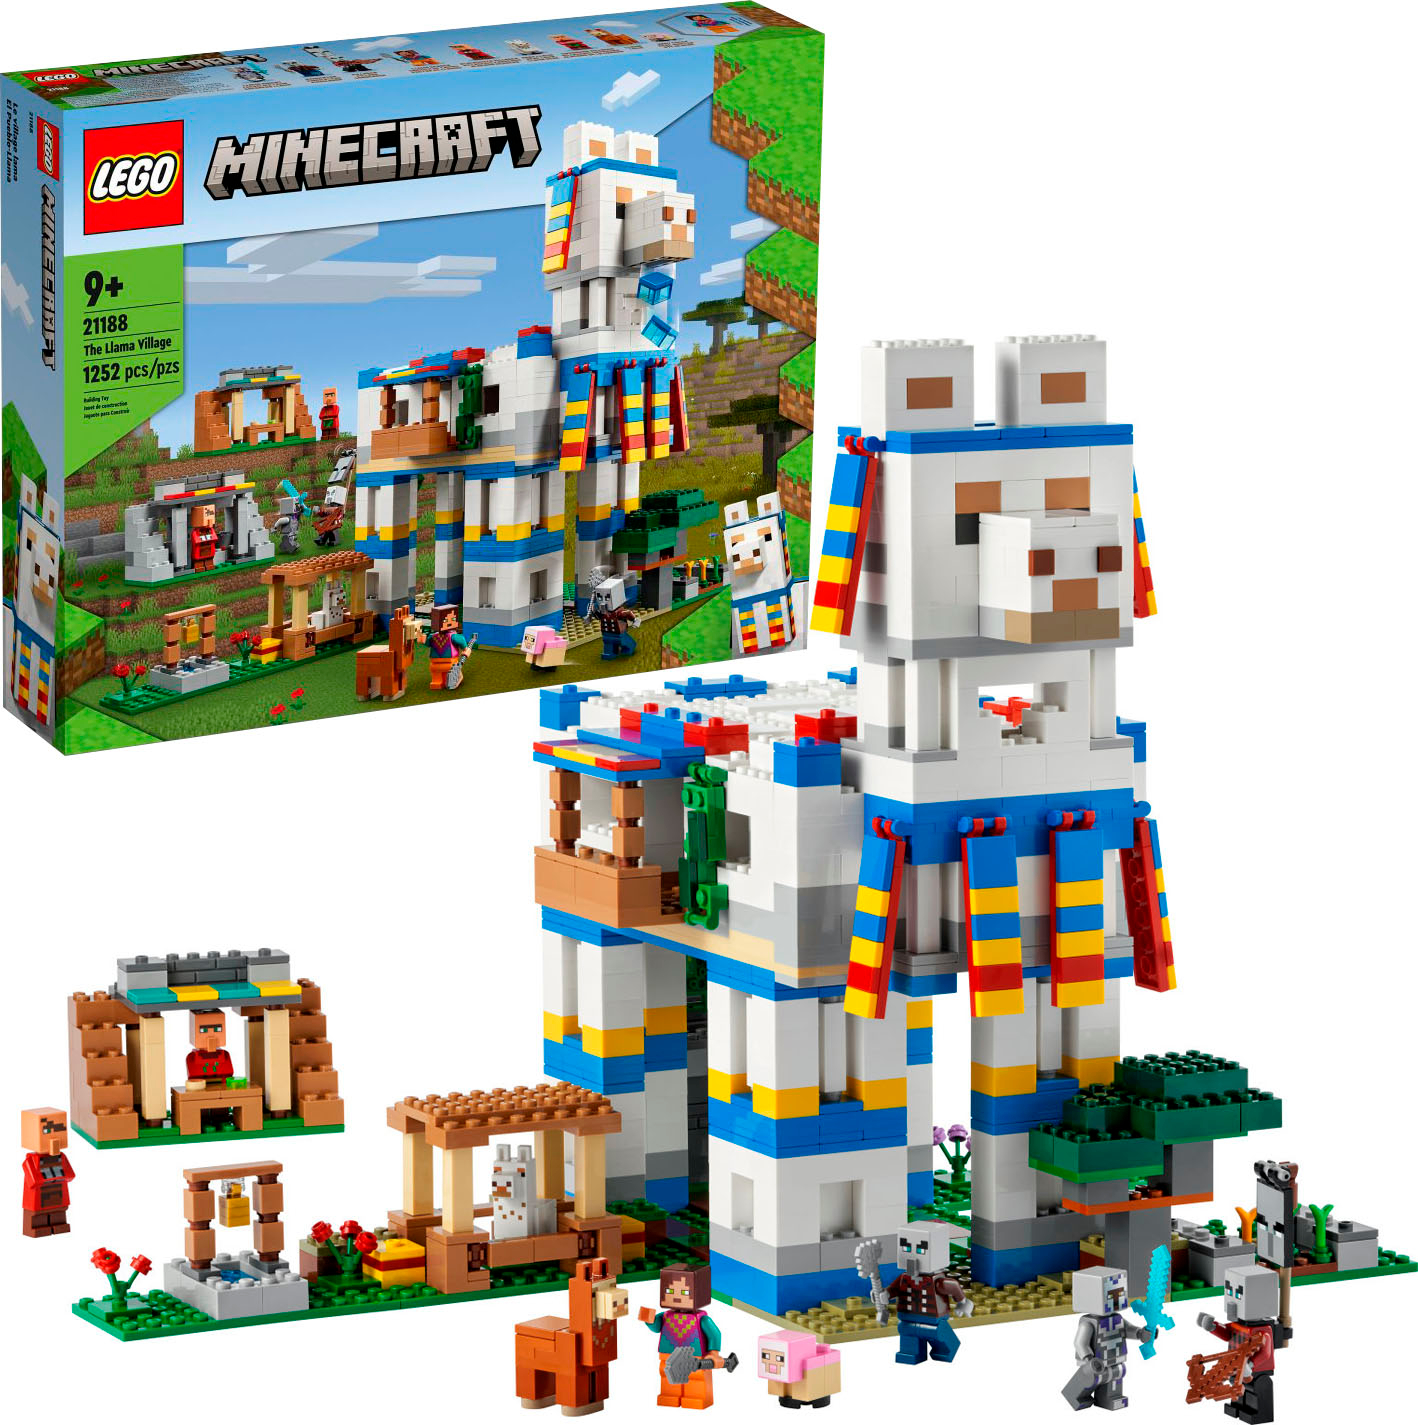 lade som om desinficere jævnt LEGO Minecraft The Llama Village 21188 6379582 - Best Buy